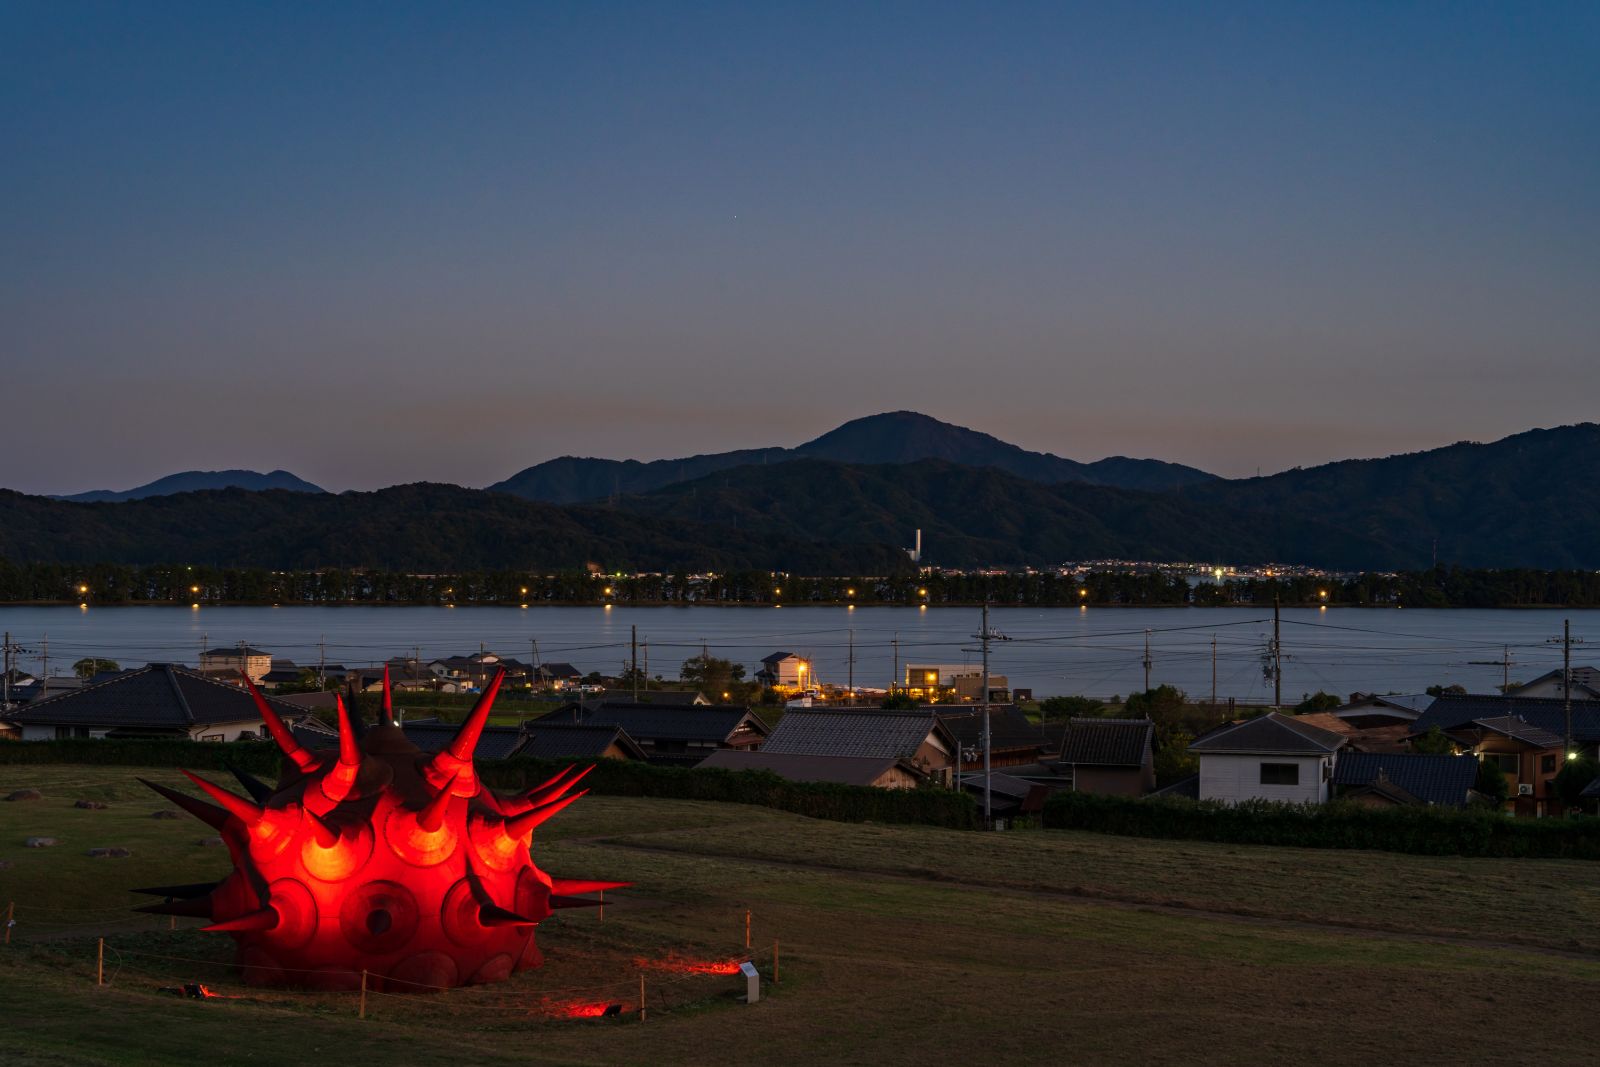 ヤノベケンジの龍がつくる新たな伝説と福知山の光のネットワーク